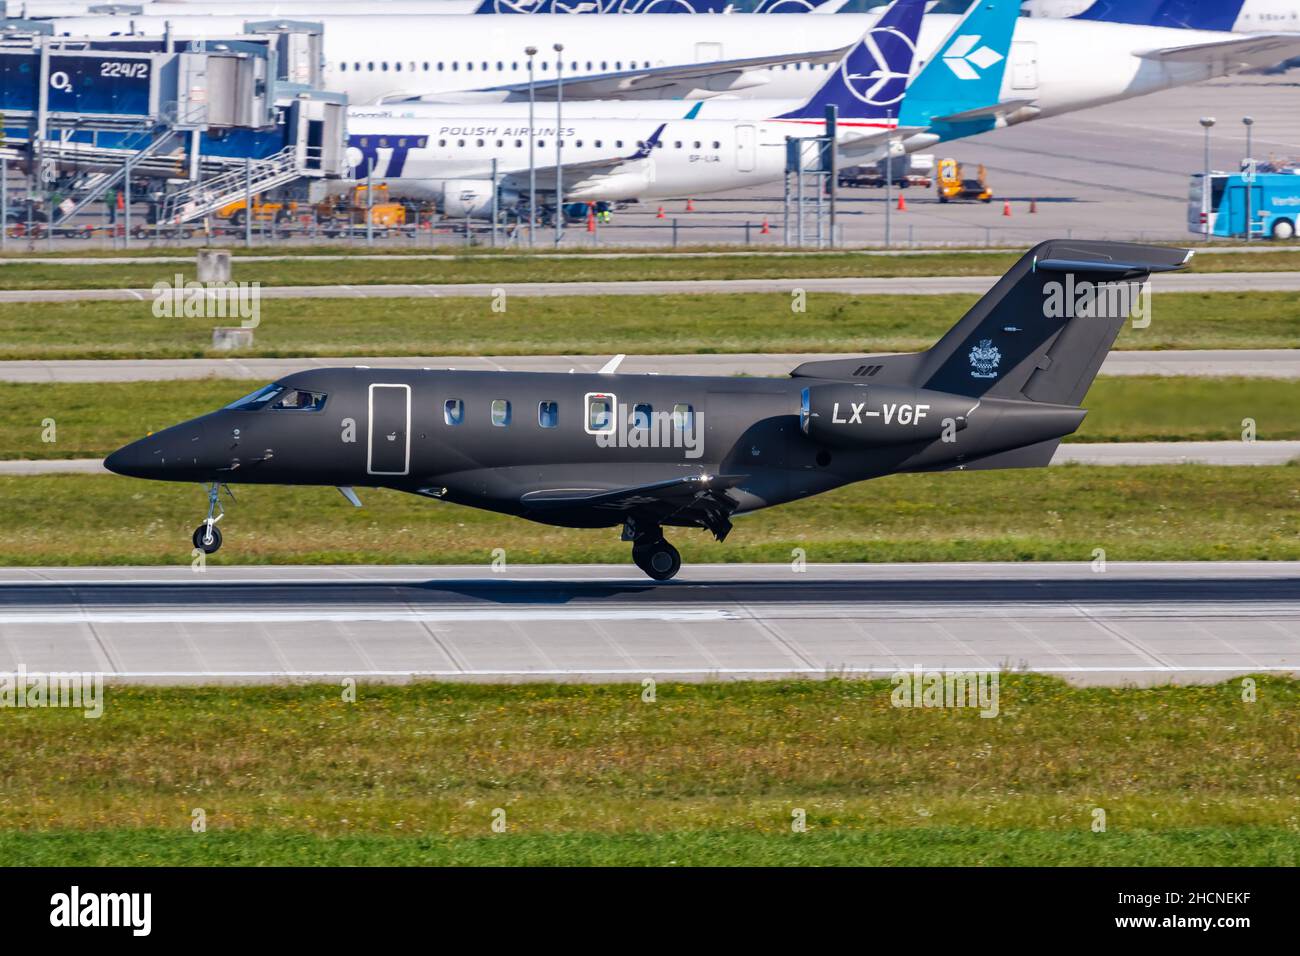 Munich, Allemagne - 9 septembre 2021 : avion du groupe de vol Pilatus PC-24 à l'aéroport de Munich (MUC) en Allemagne. Banque D'Images